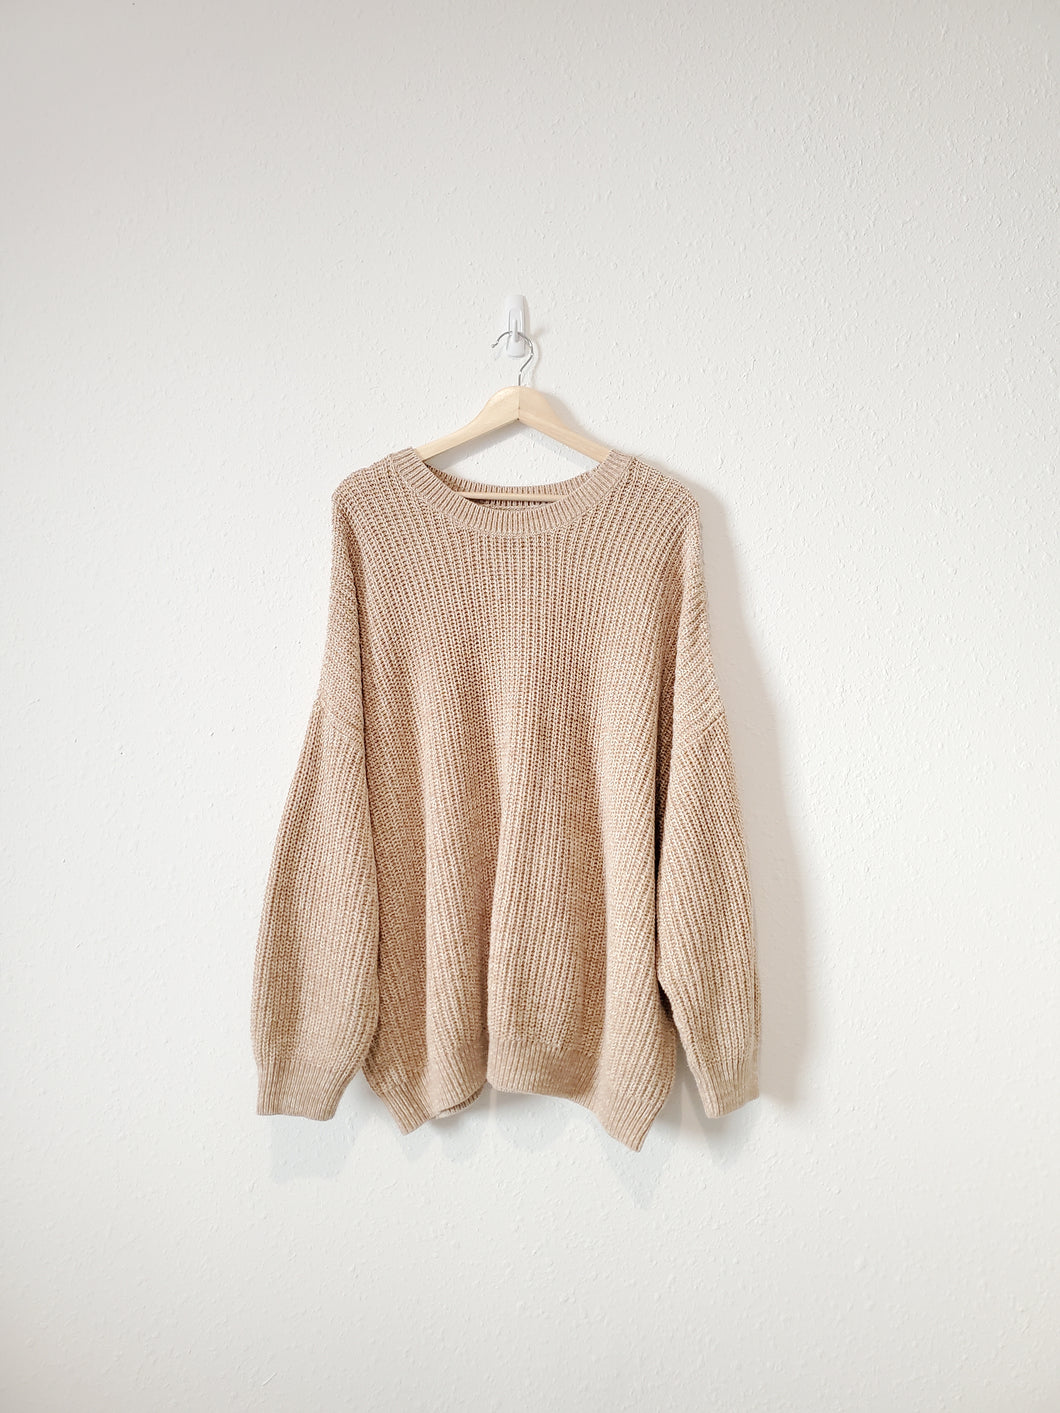 Neutral Marled Sweater (3X)